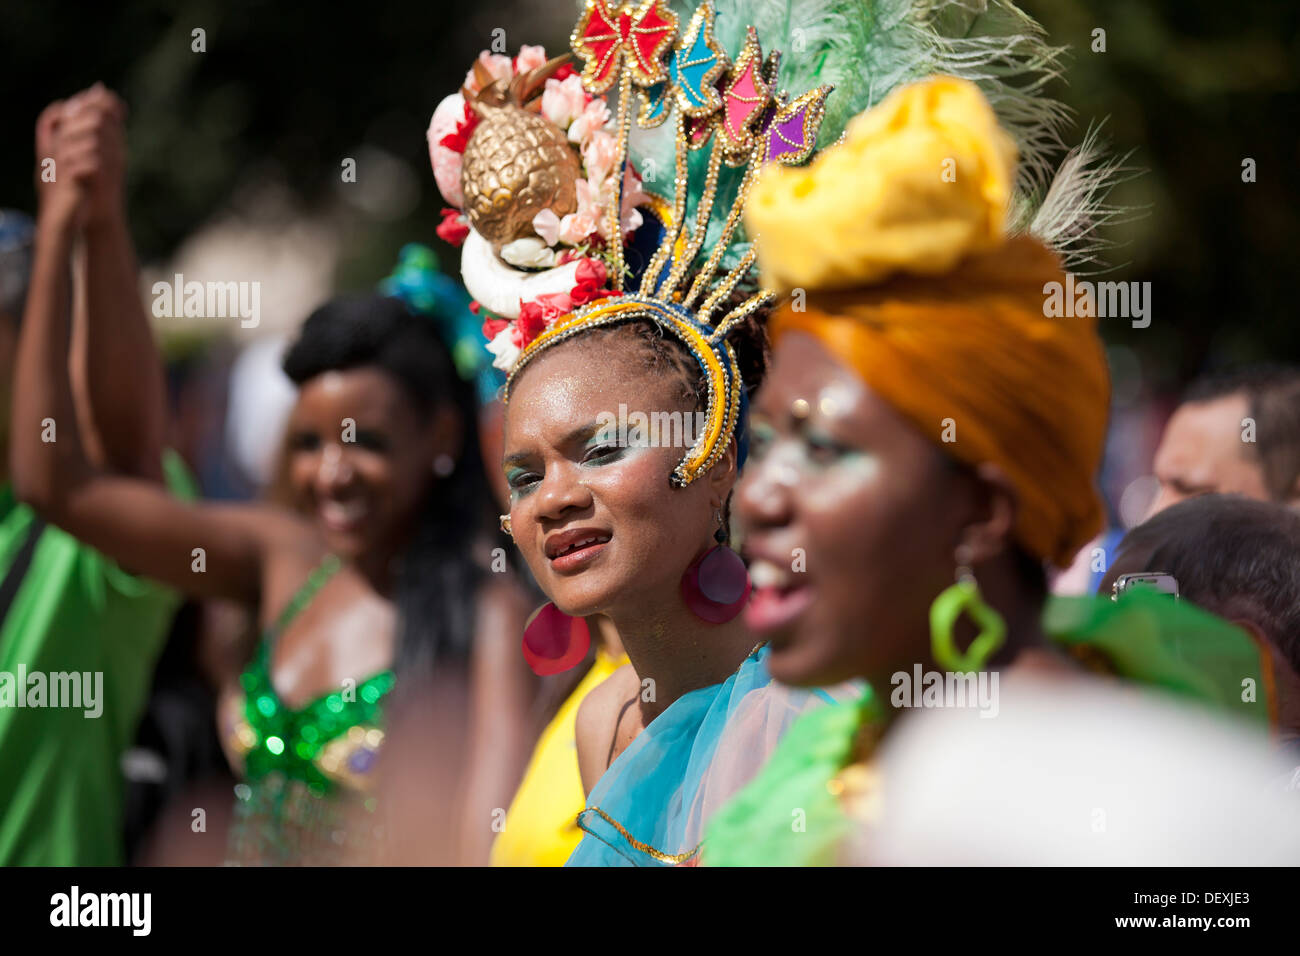 Brasilianische Samba-Tänzer in Tracht Stockfoto